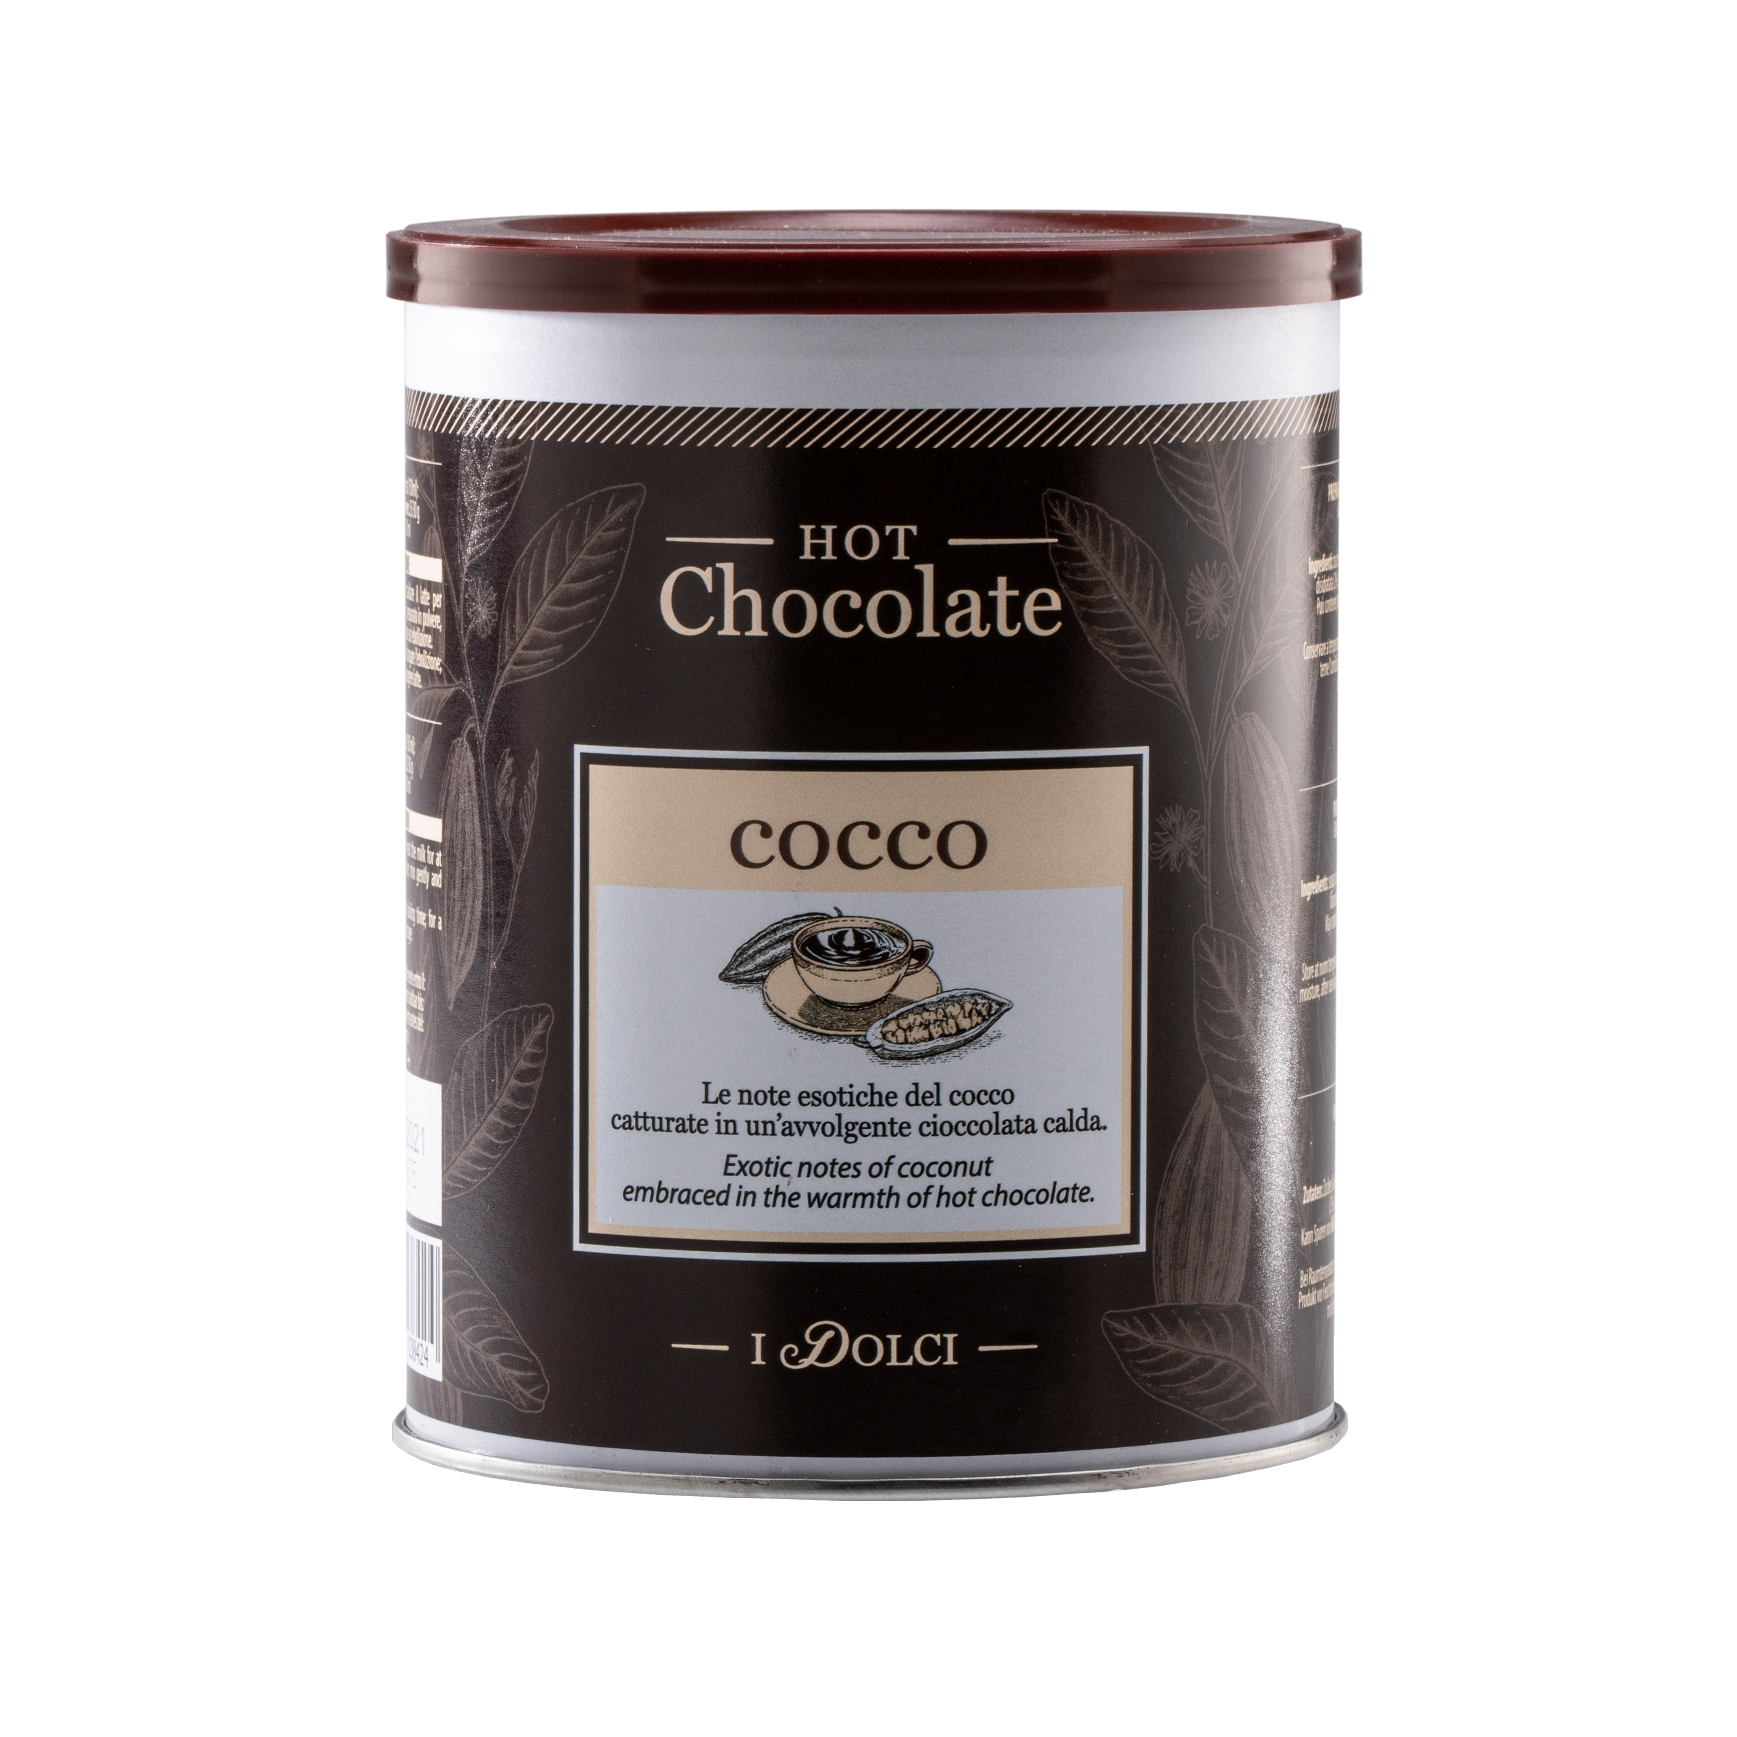 Горячий шоколад Diemme Caffe Coconut Chocolate 500 г горячий шоколад aristocrat классический 500 г